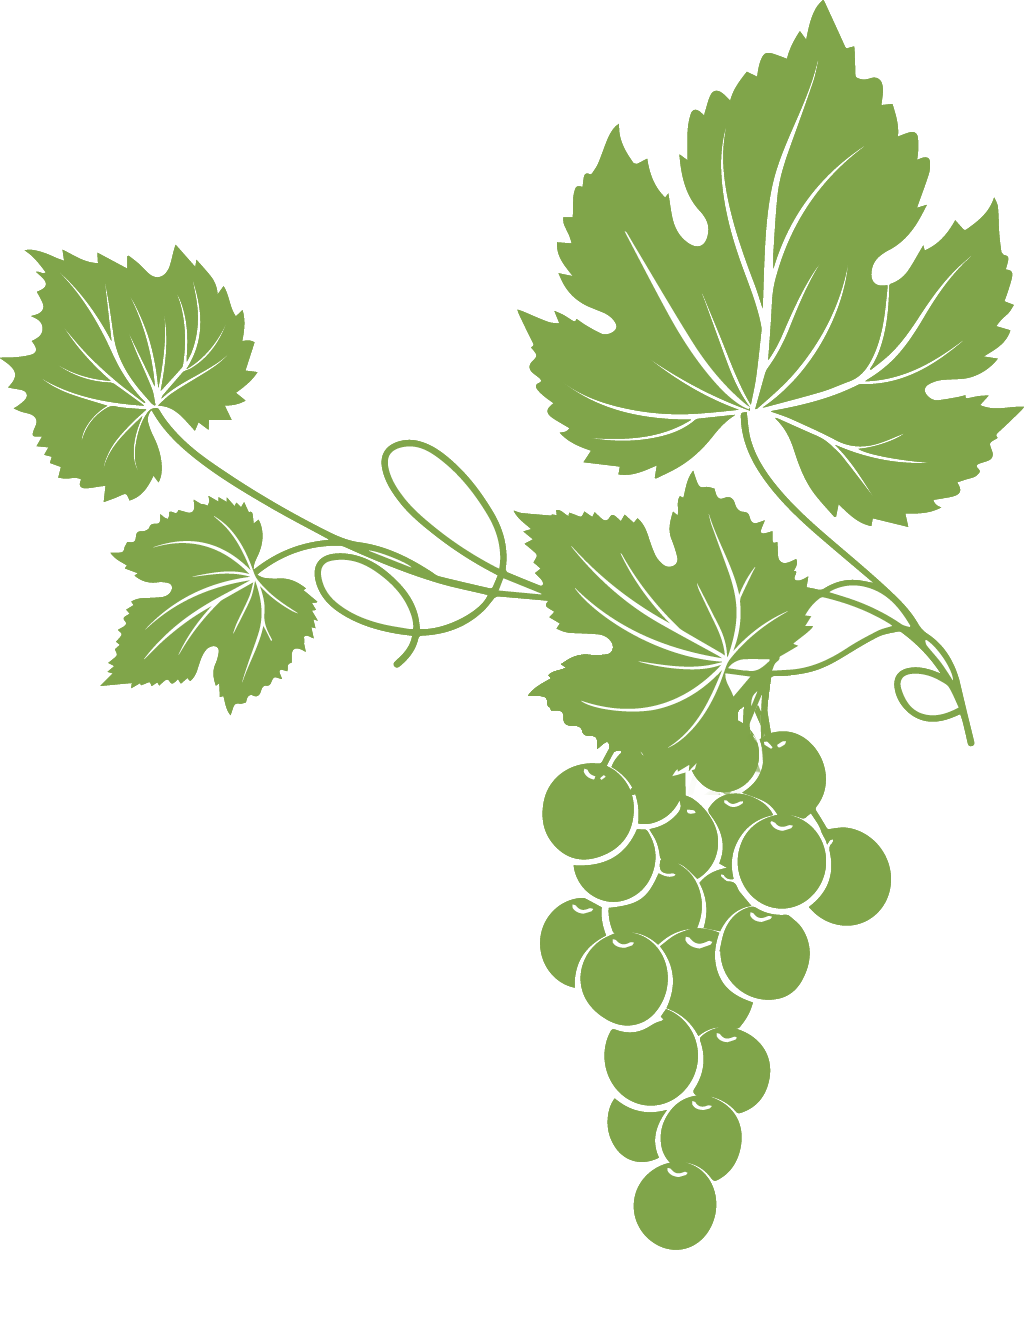 Disegno di foglie e grappolo d'uva